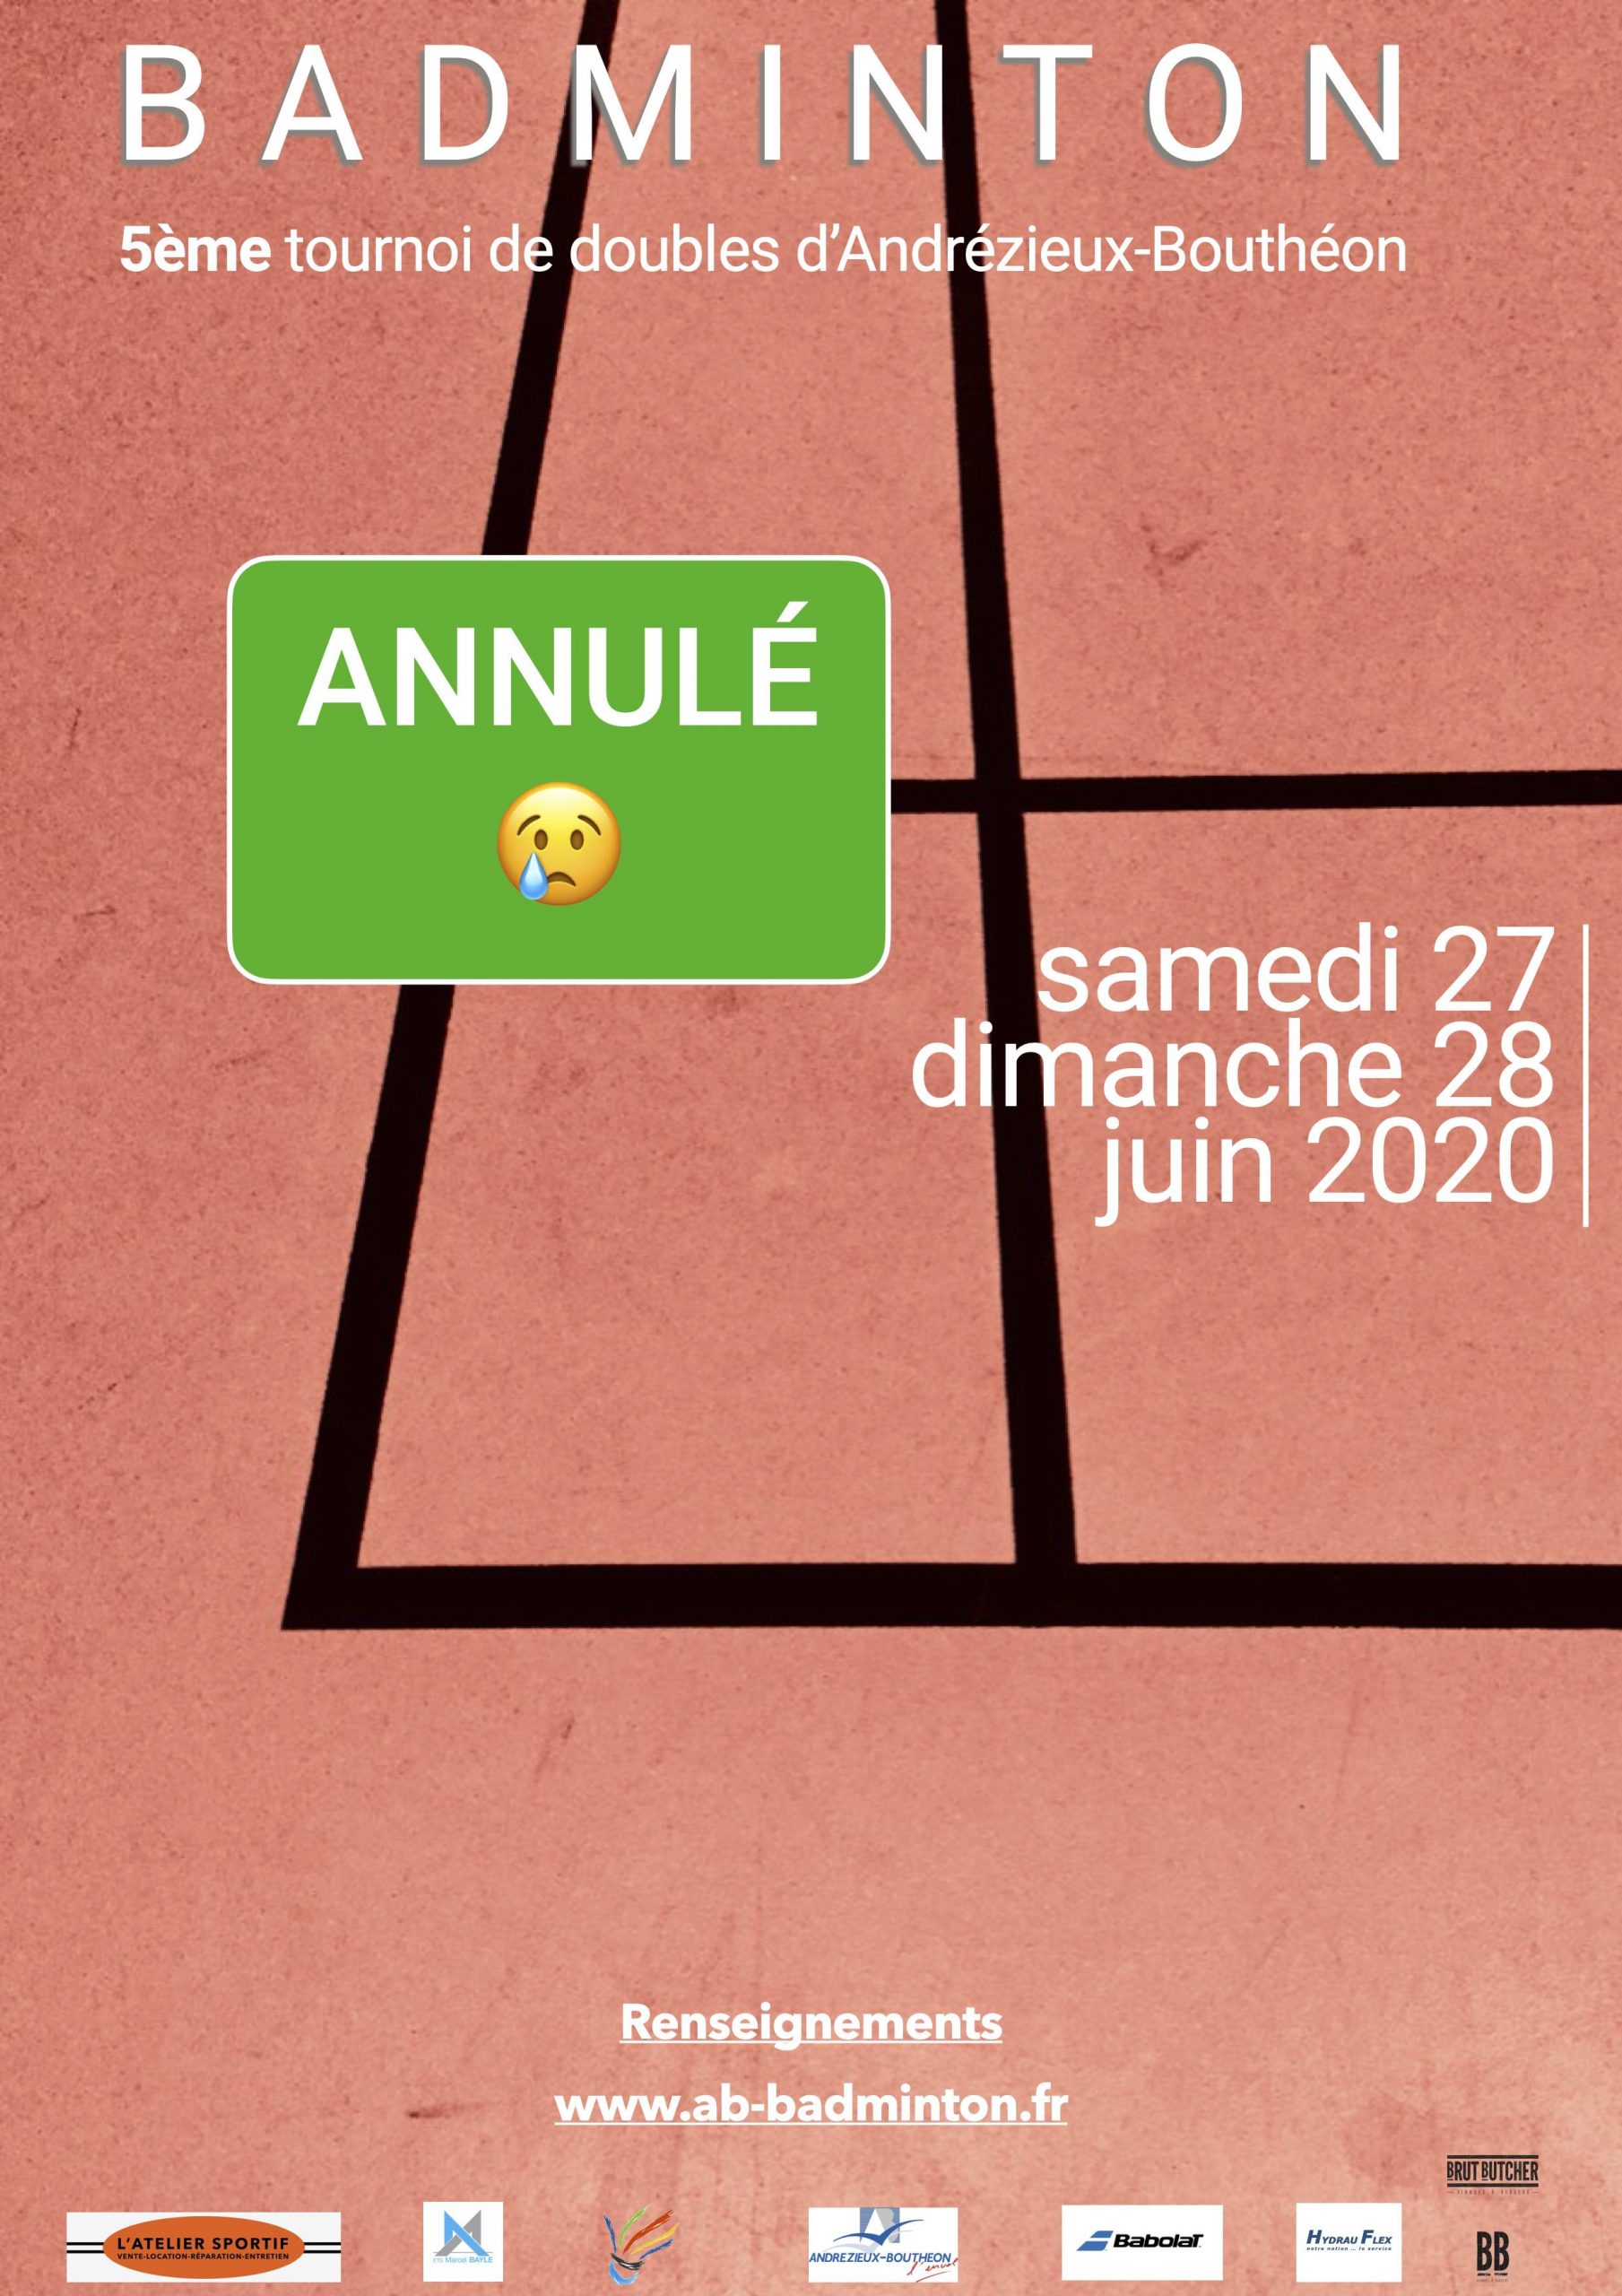 5ème tournoi de doubles Andrézieux-Bouthéon